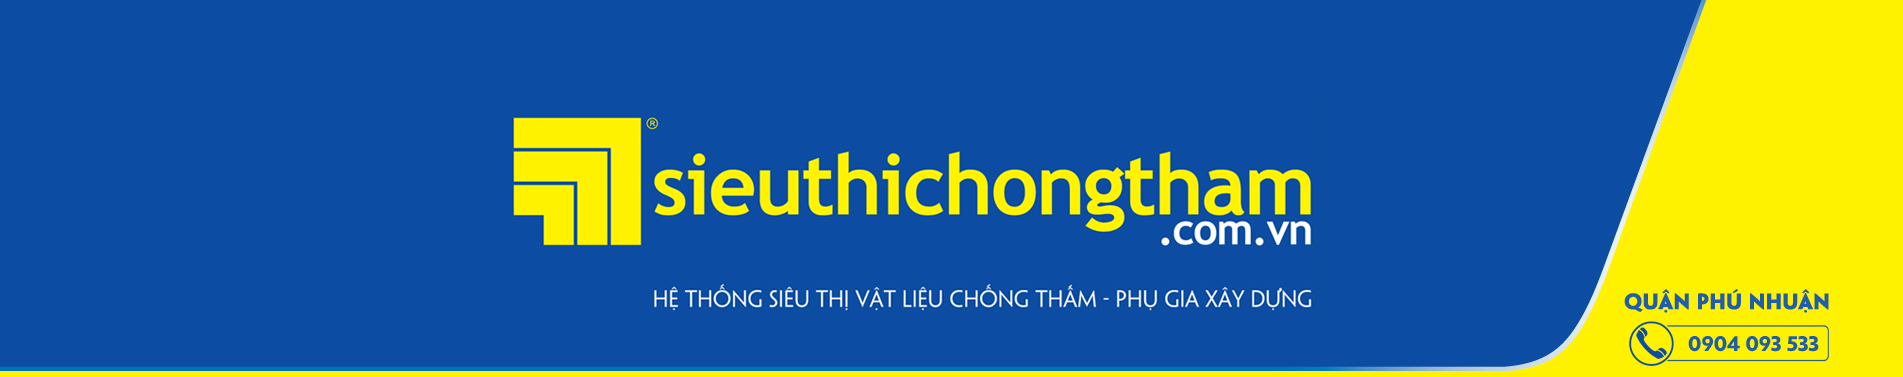 Quan Phu Nhuan Banner 1